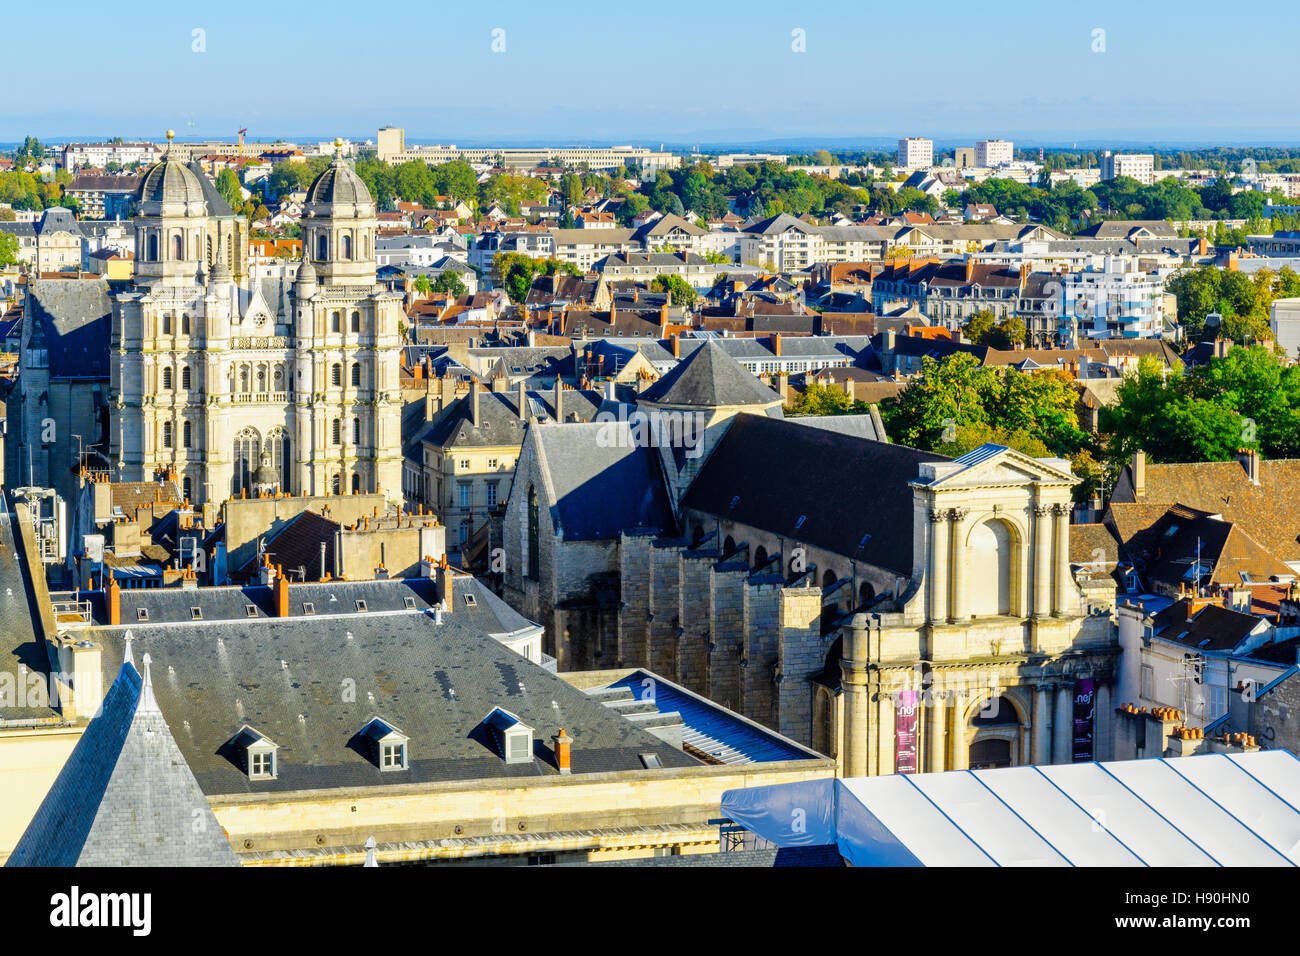 DIJON, FRANCE - 15 octobre 2016 : Une vue aérienne du centre historique de la ville, avec l'église St Michel, à Dijon, Bourgogne, France Banque D'Images